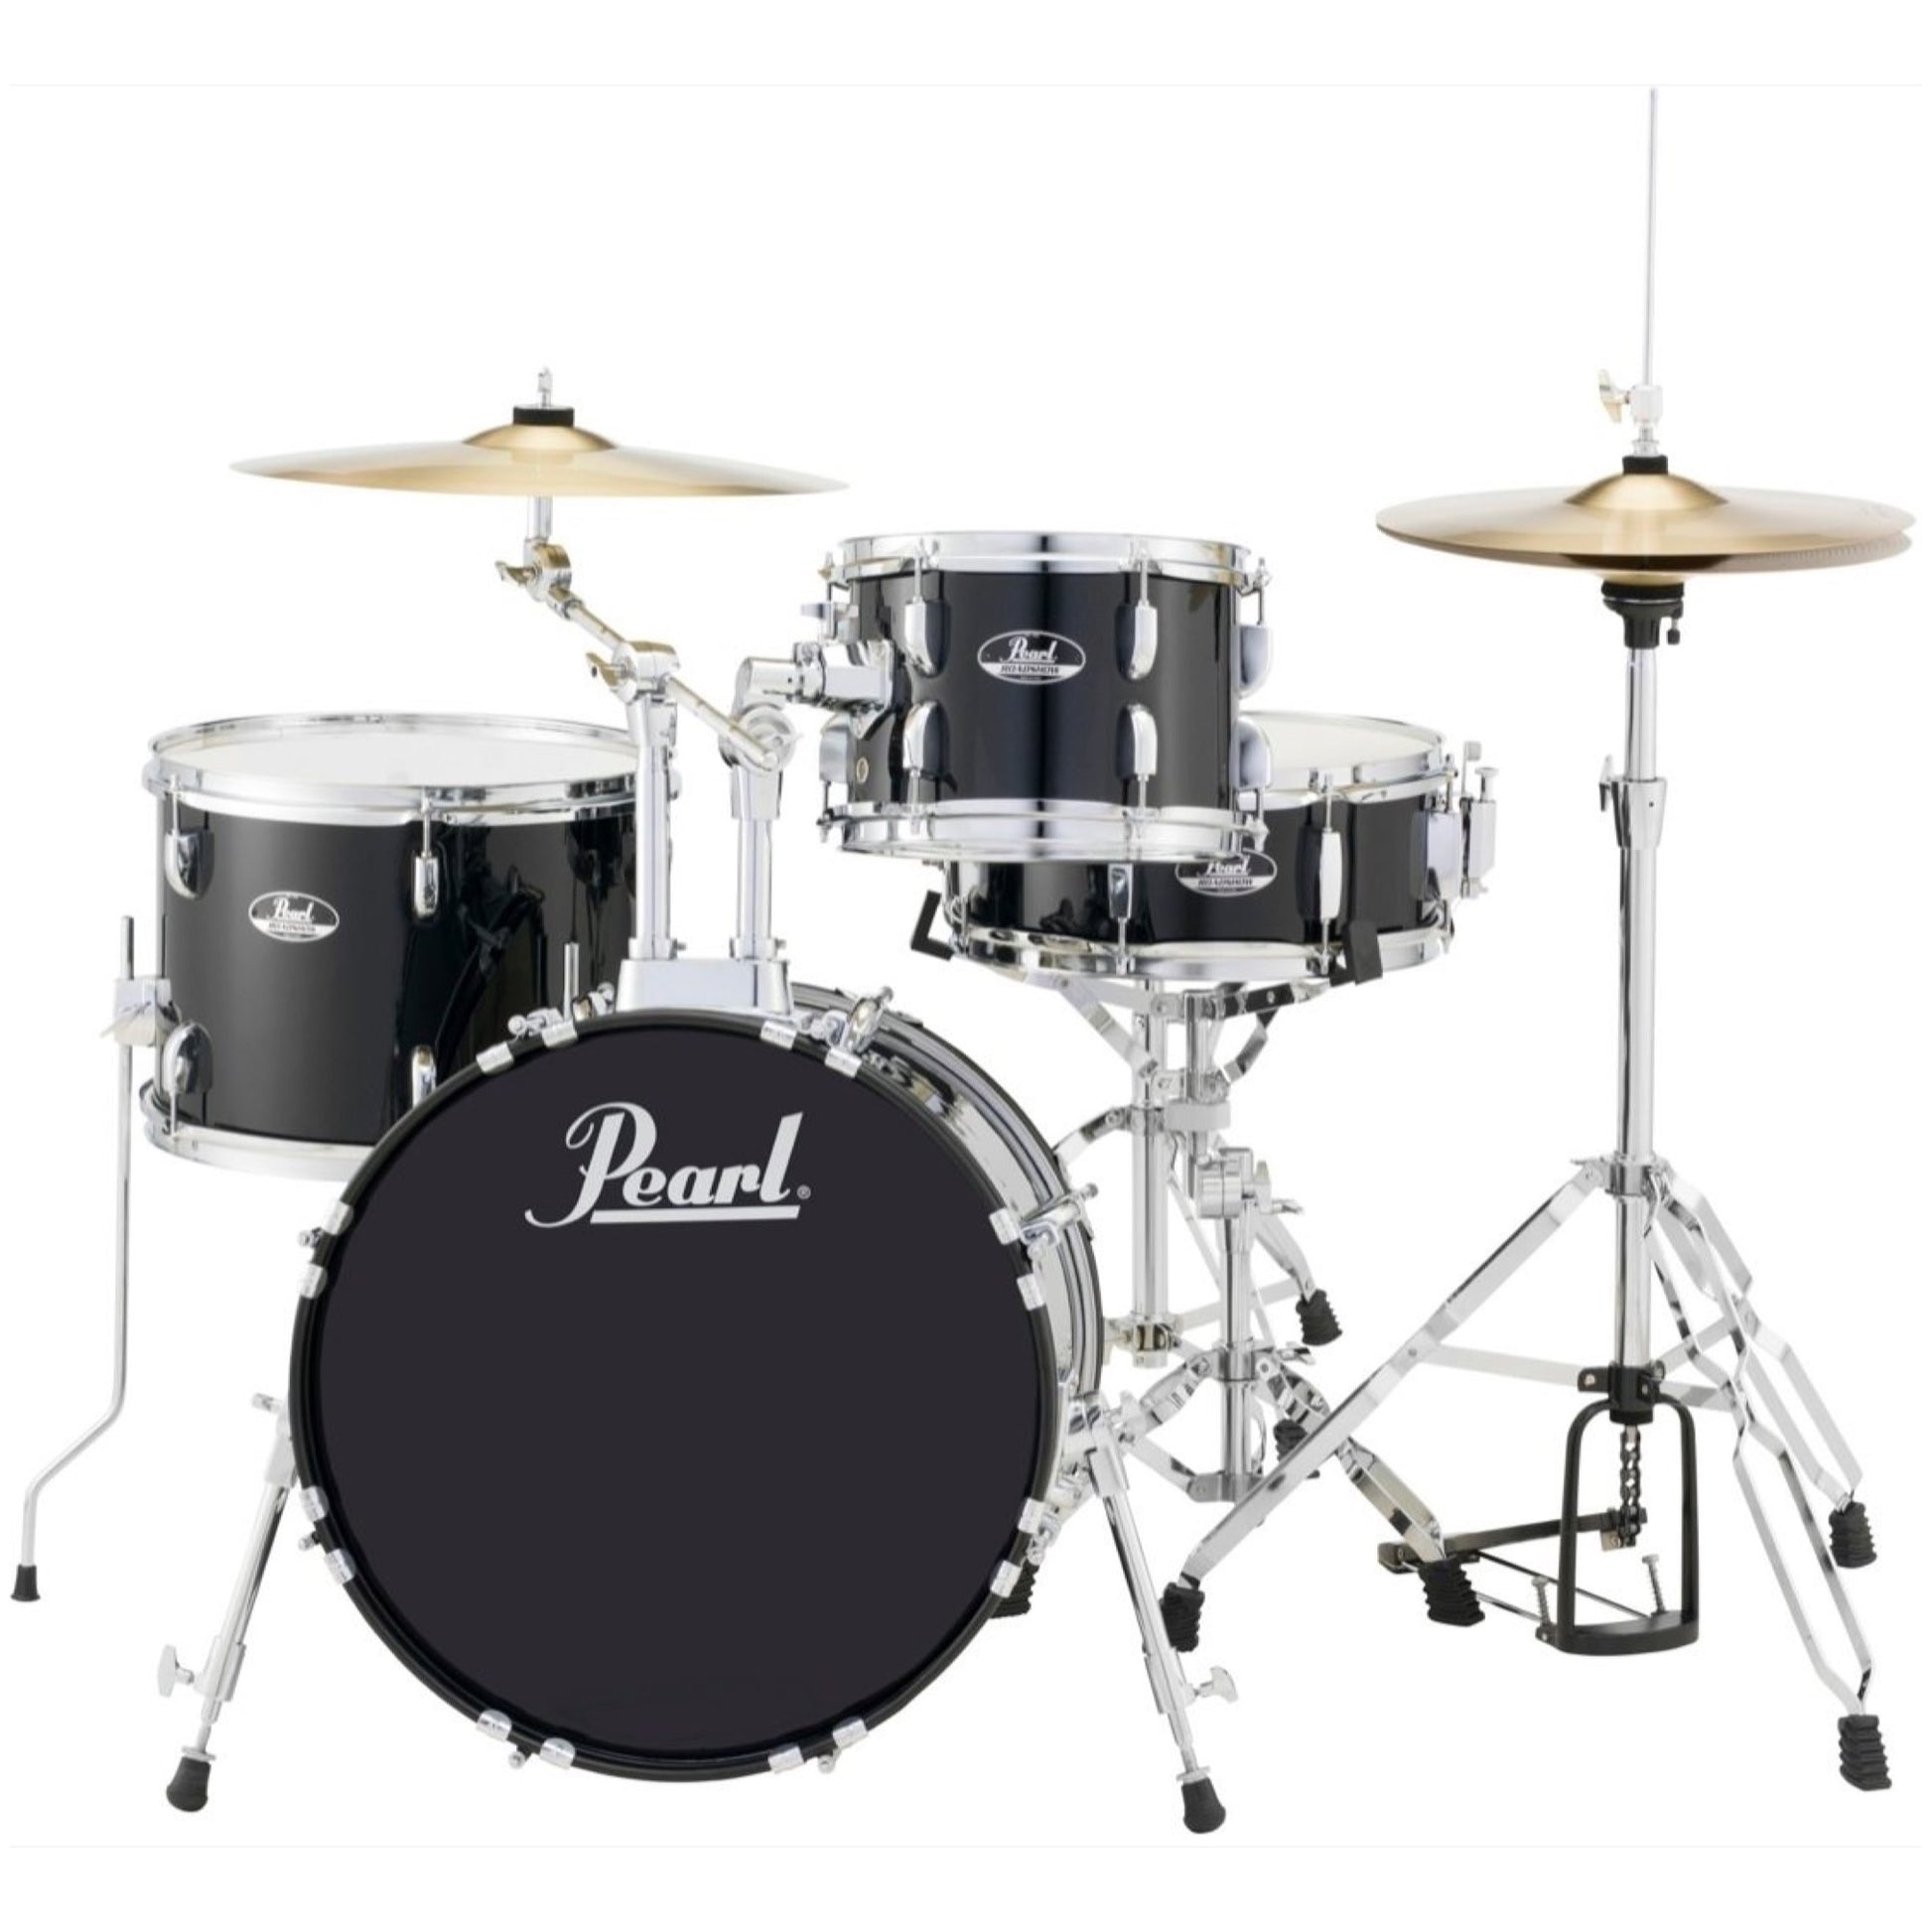 Pearl RS584C Roadshow Complete Bop Drum Kit, 4-Piece, Black